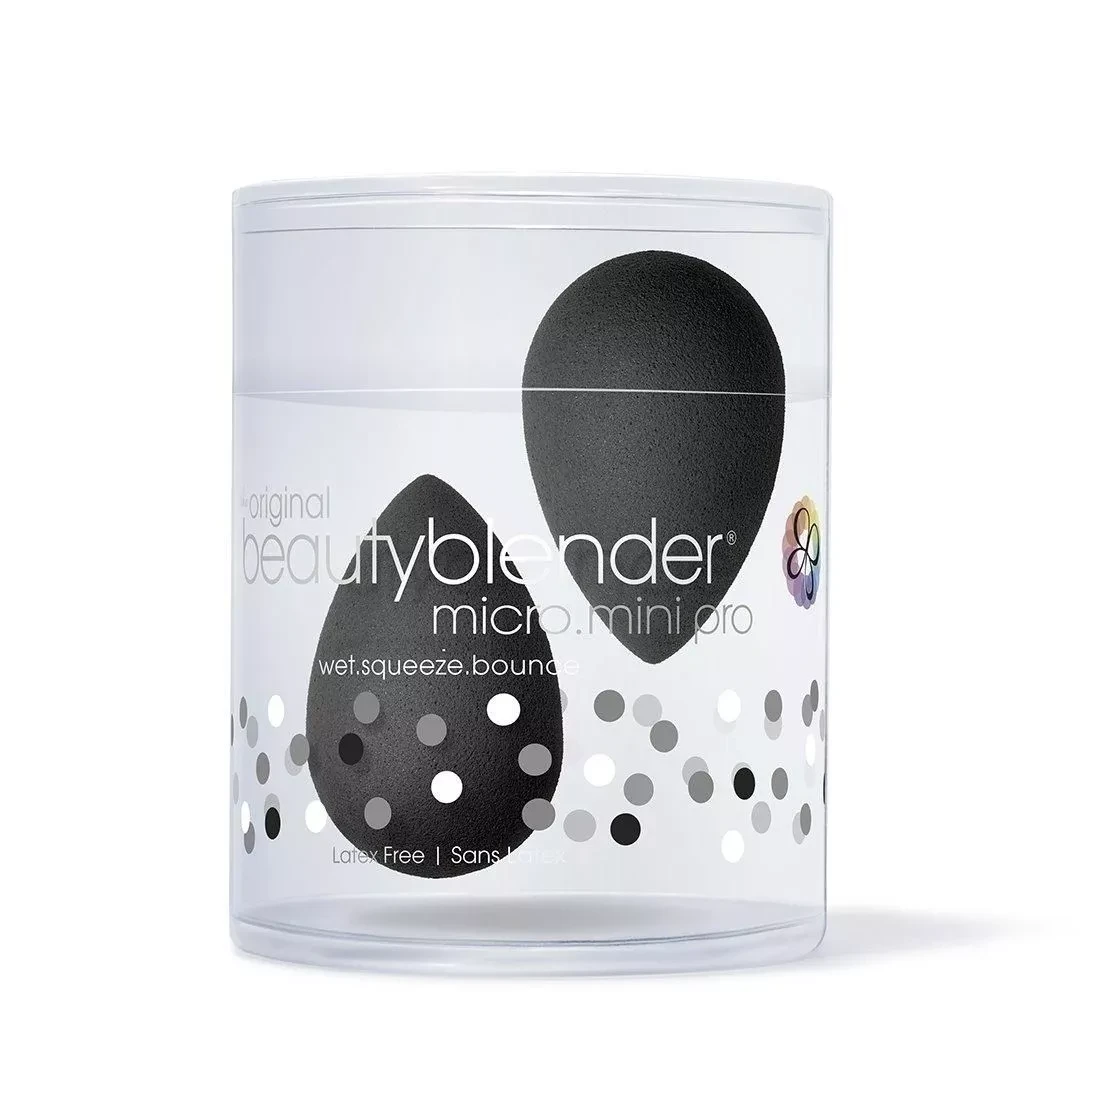 Beautyblender Micro Mini Pro Професійний спонж для макіяжу міні